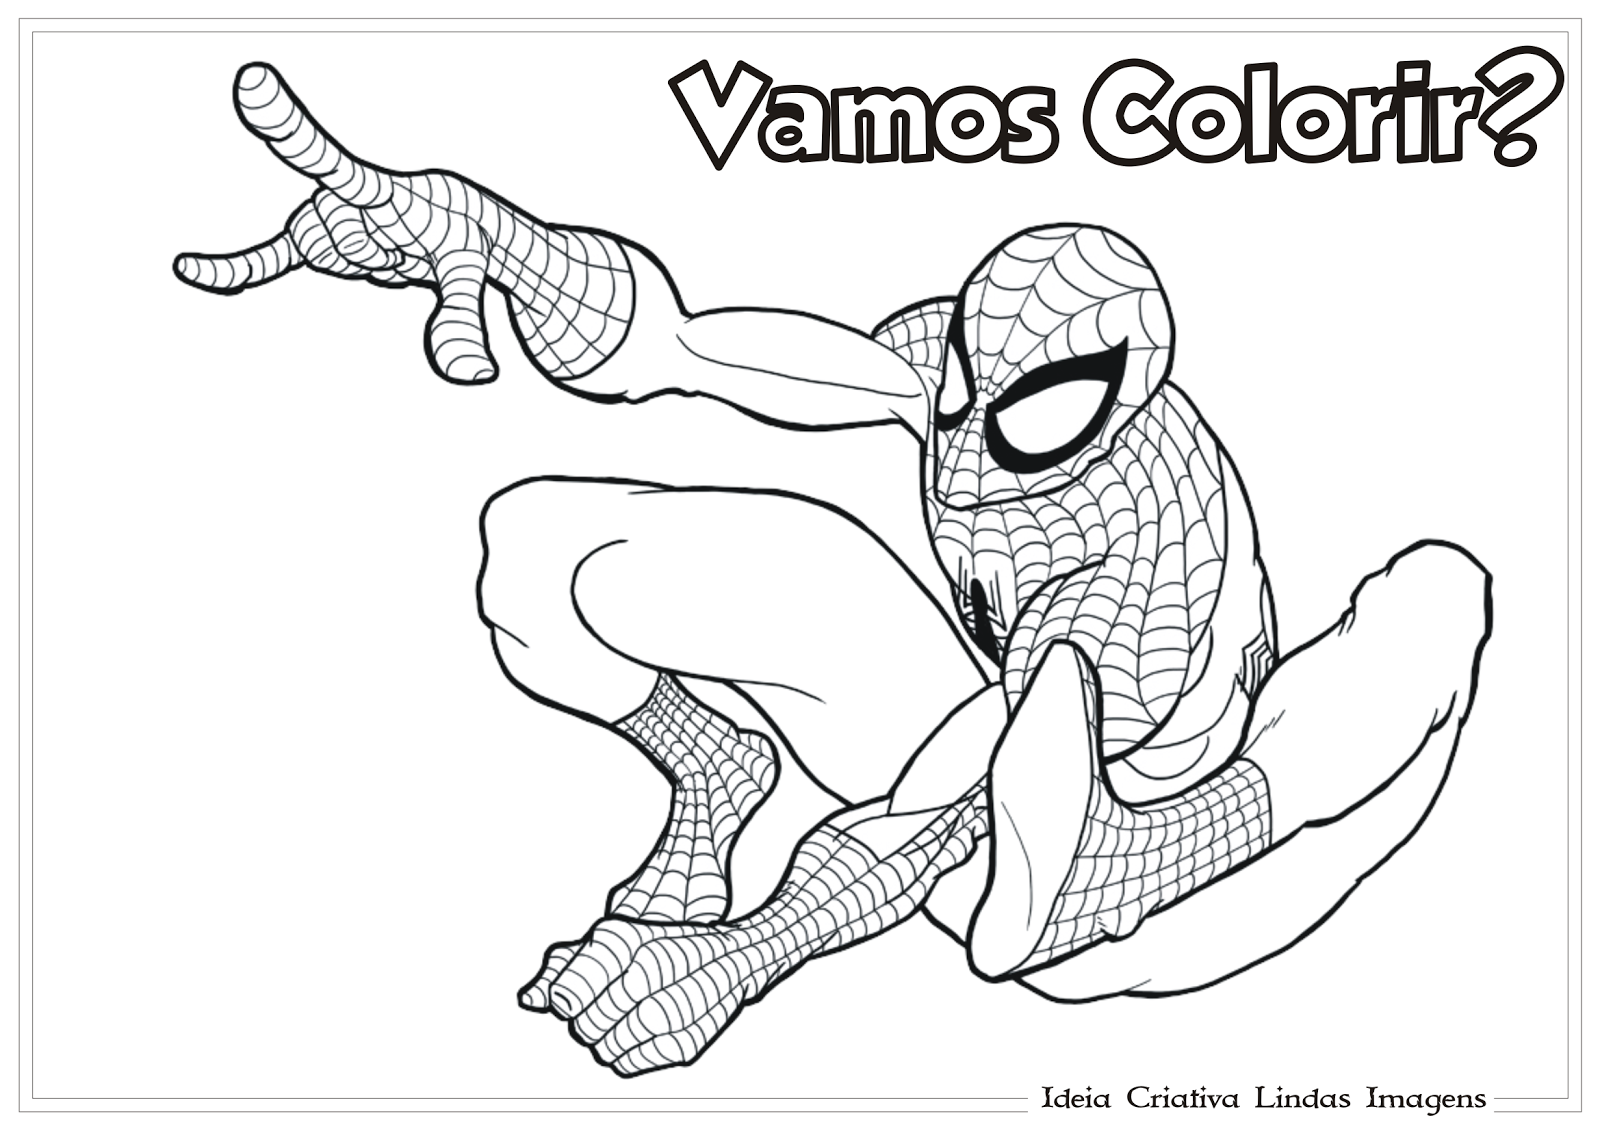 15 ideias de Homem Aranha para Colorir  homem aranha, colorir, homem aranha  desenho